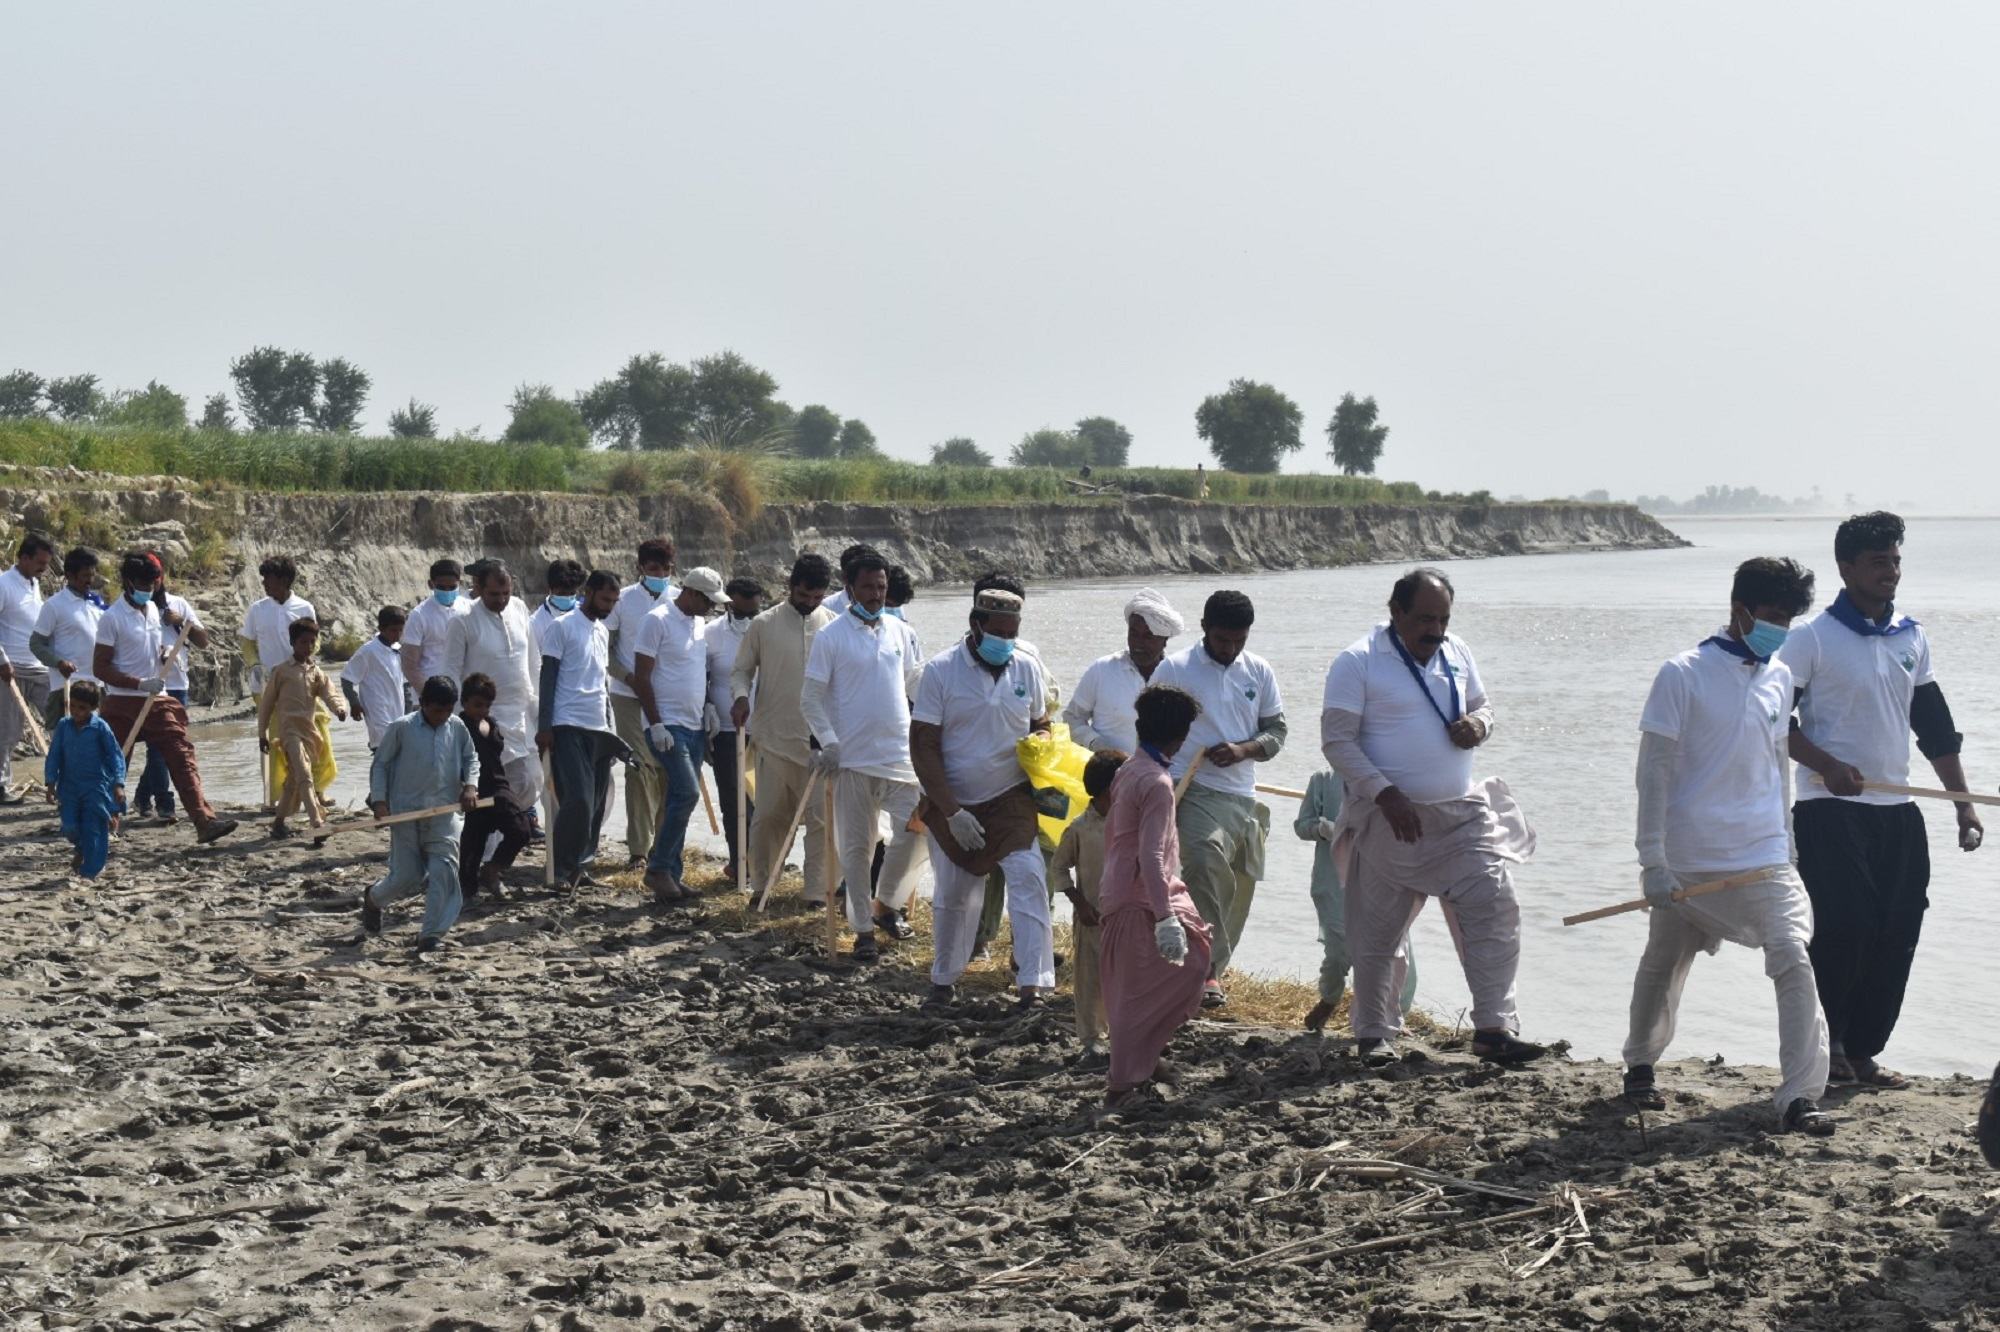 ’کلین انڈس‘ منصوبے کے تحت دریائے سندھ کے کناروں پر کچرے کی صفائی کی مہم پاکستان میں اقوام متحدہ کے ادارہ برائے خوراک و زراعت (ایف اے او) کے زیراہتمام شروع کی گئی ہے۔